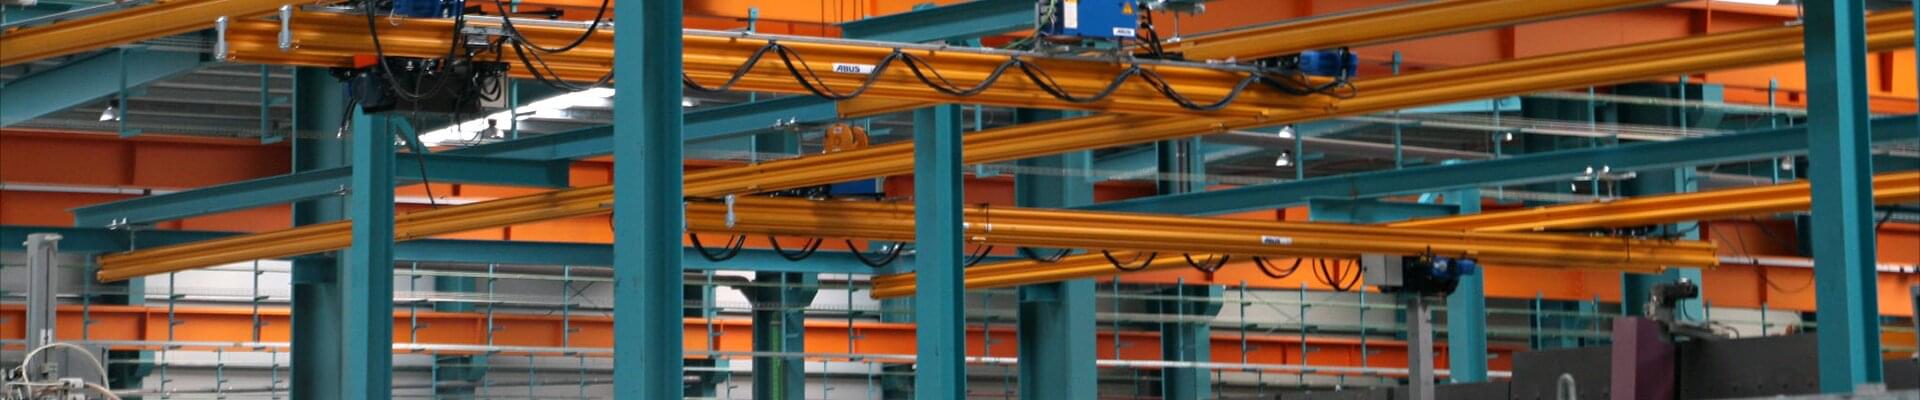 ABUS HB-system med elektrisk kedjehiss i drift för glasbearbetning i Spanien